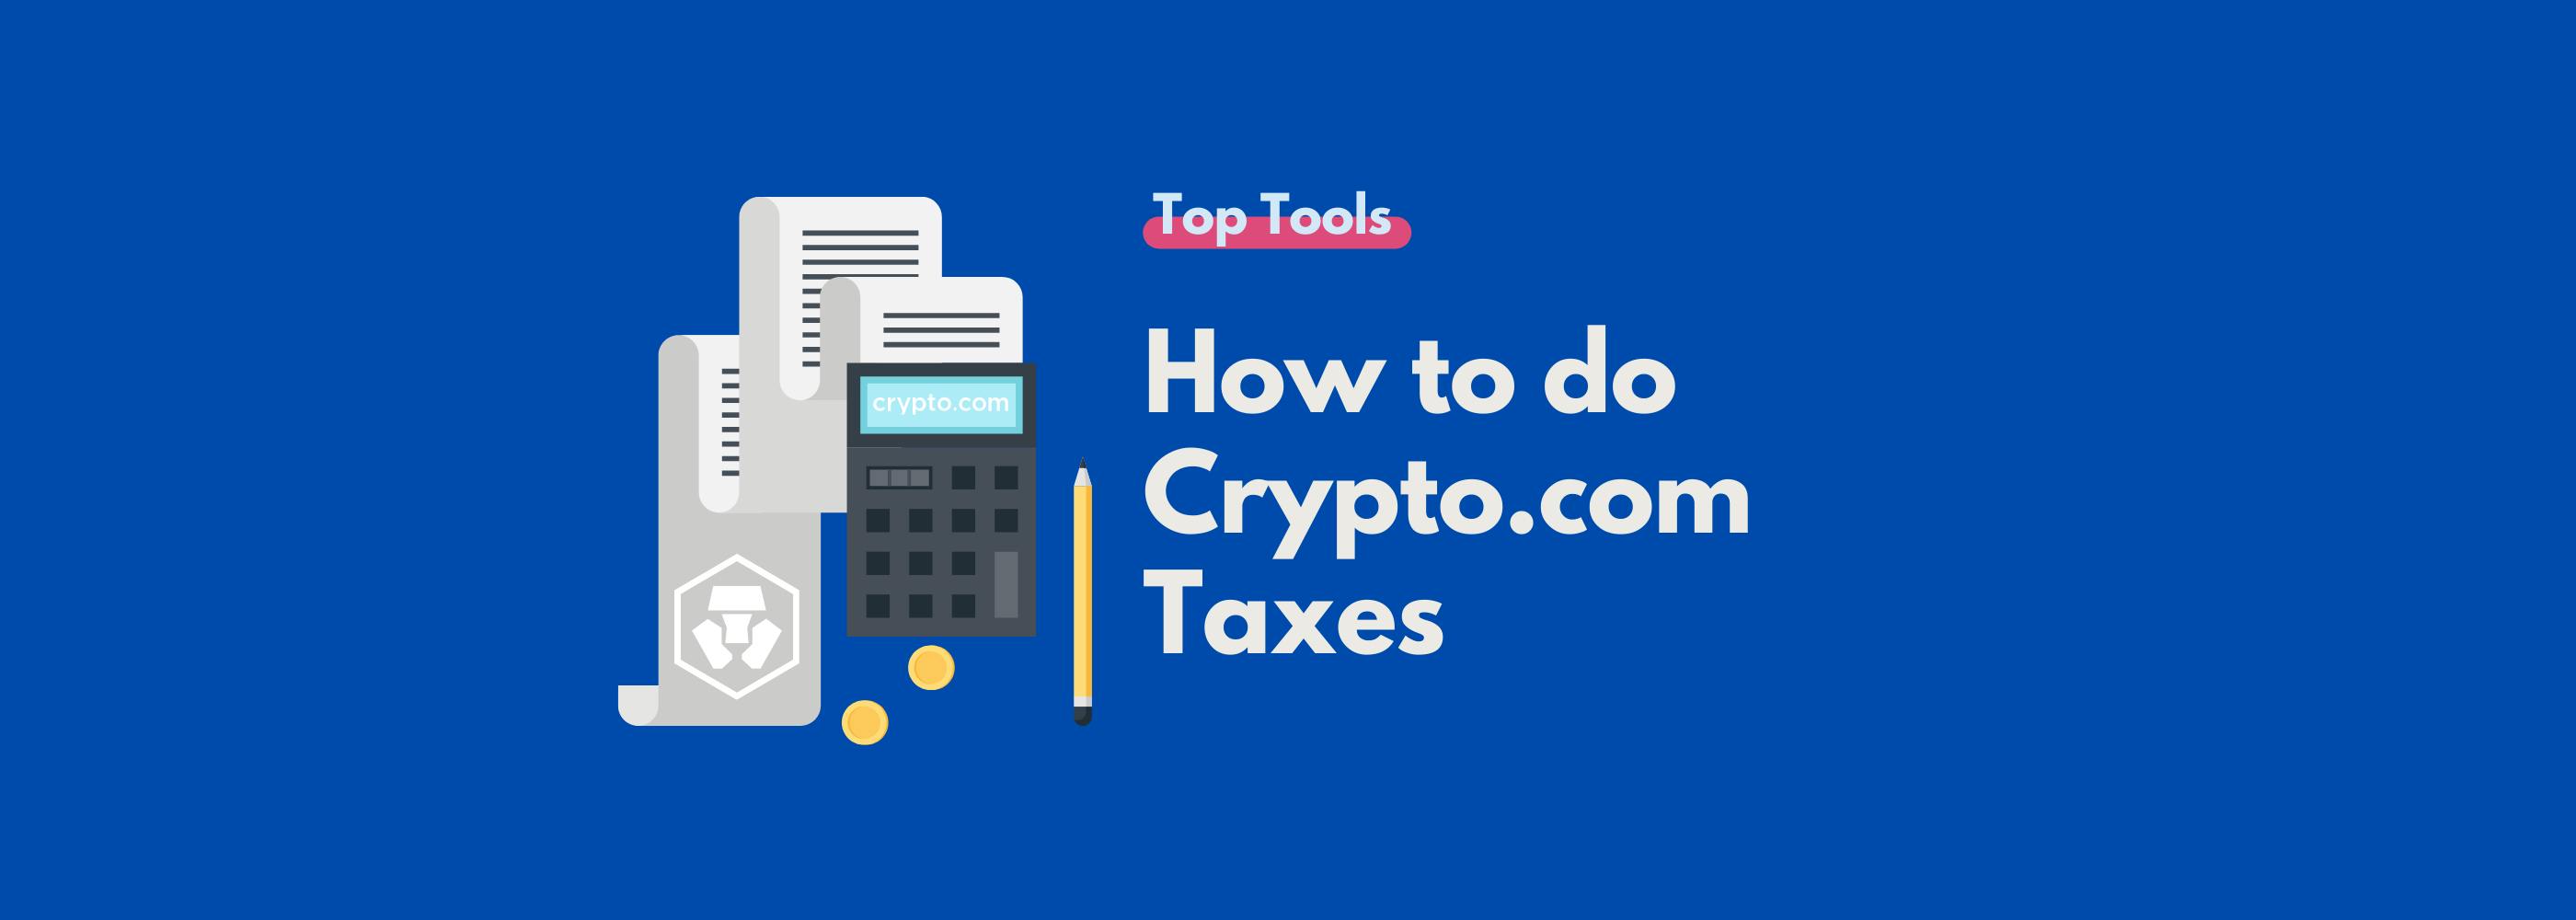 crypto.com tax review